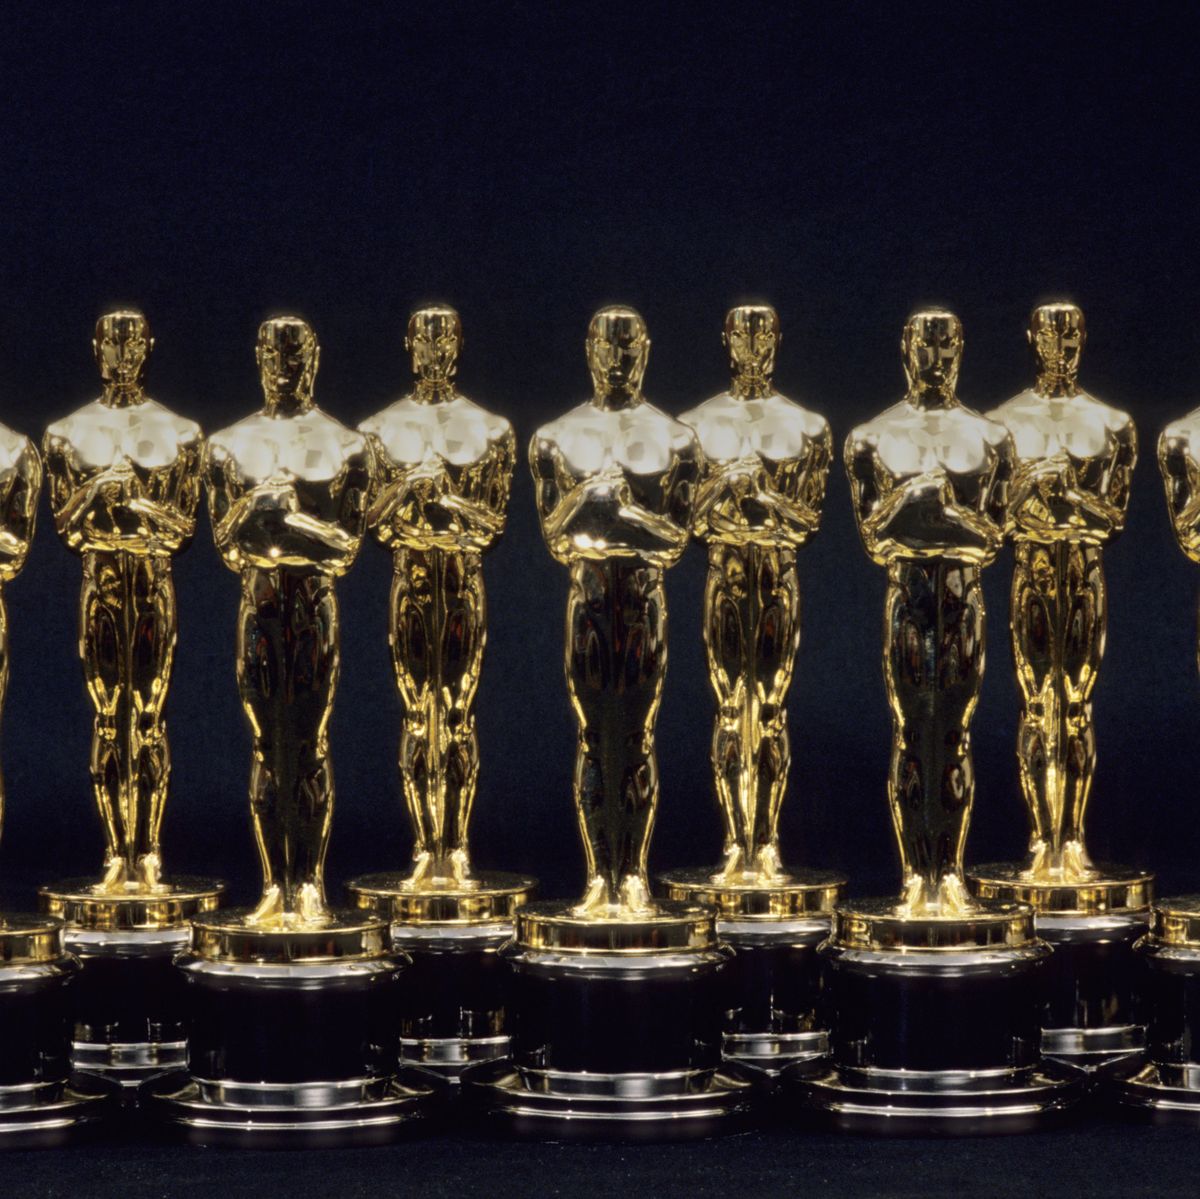 Cuánto vale un Premio Oscar? El valor de la estatuilla